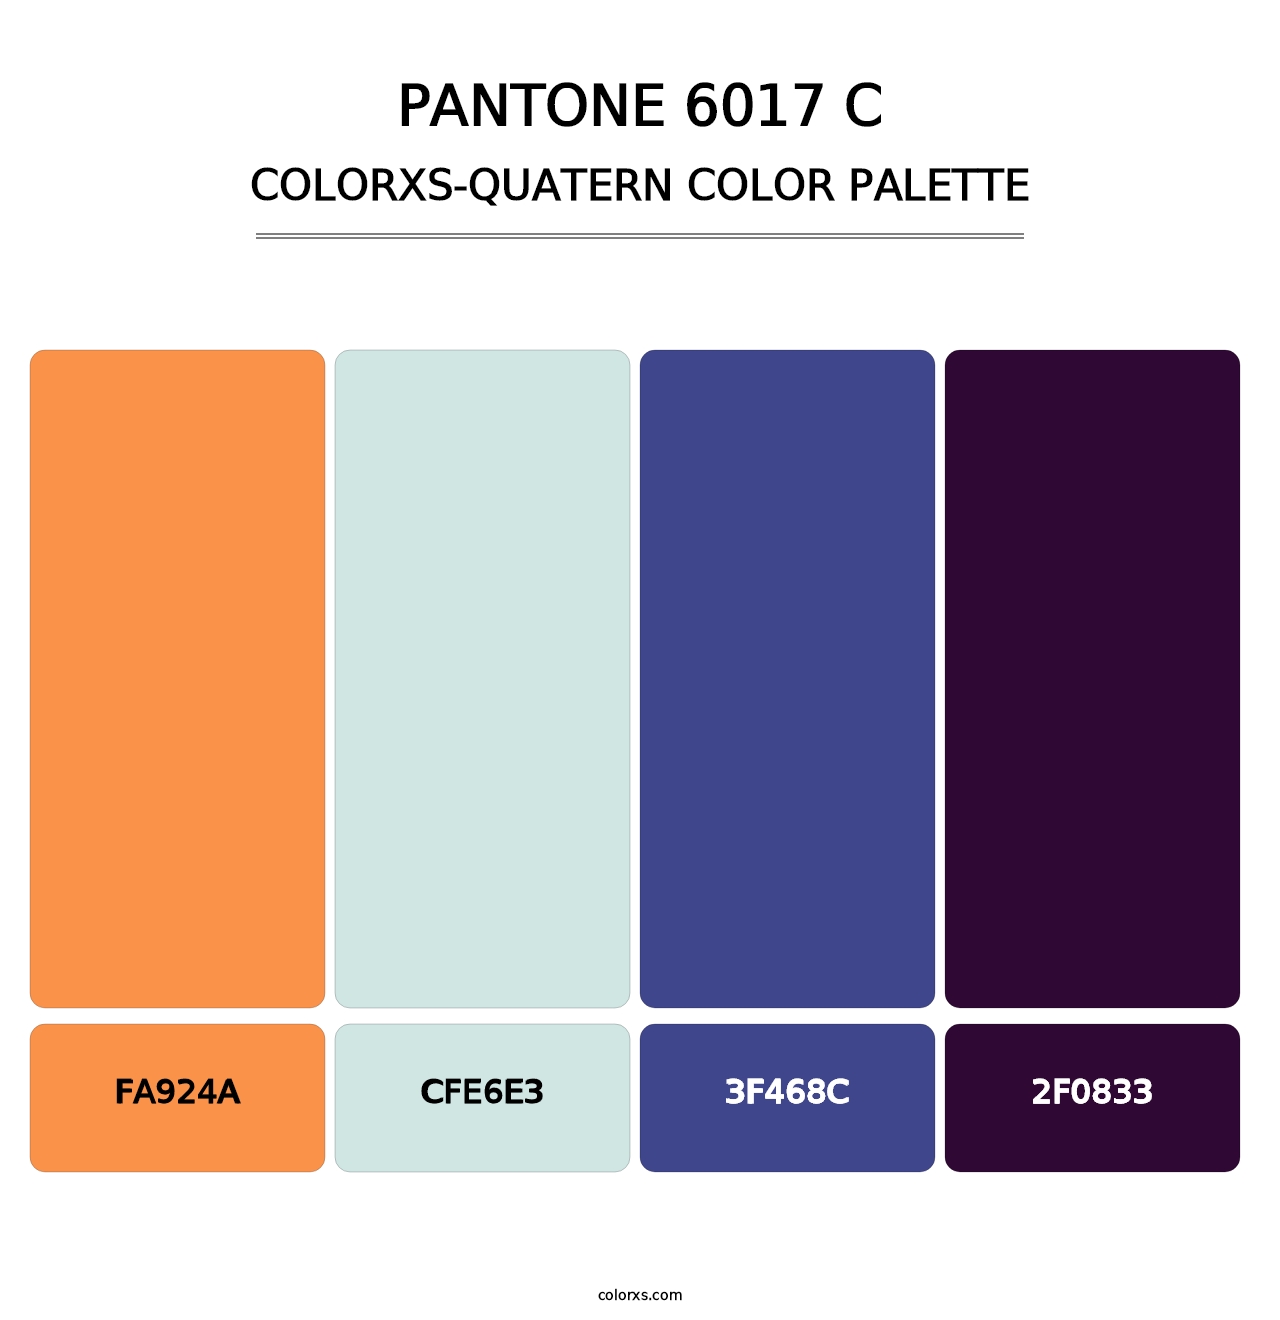 PANTONE 6017 C - Colorxs Quatern Palette